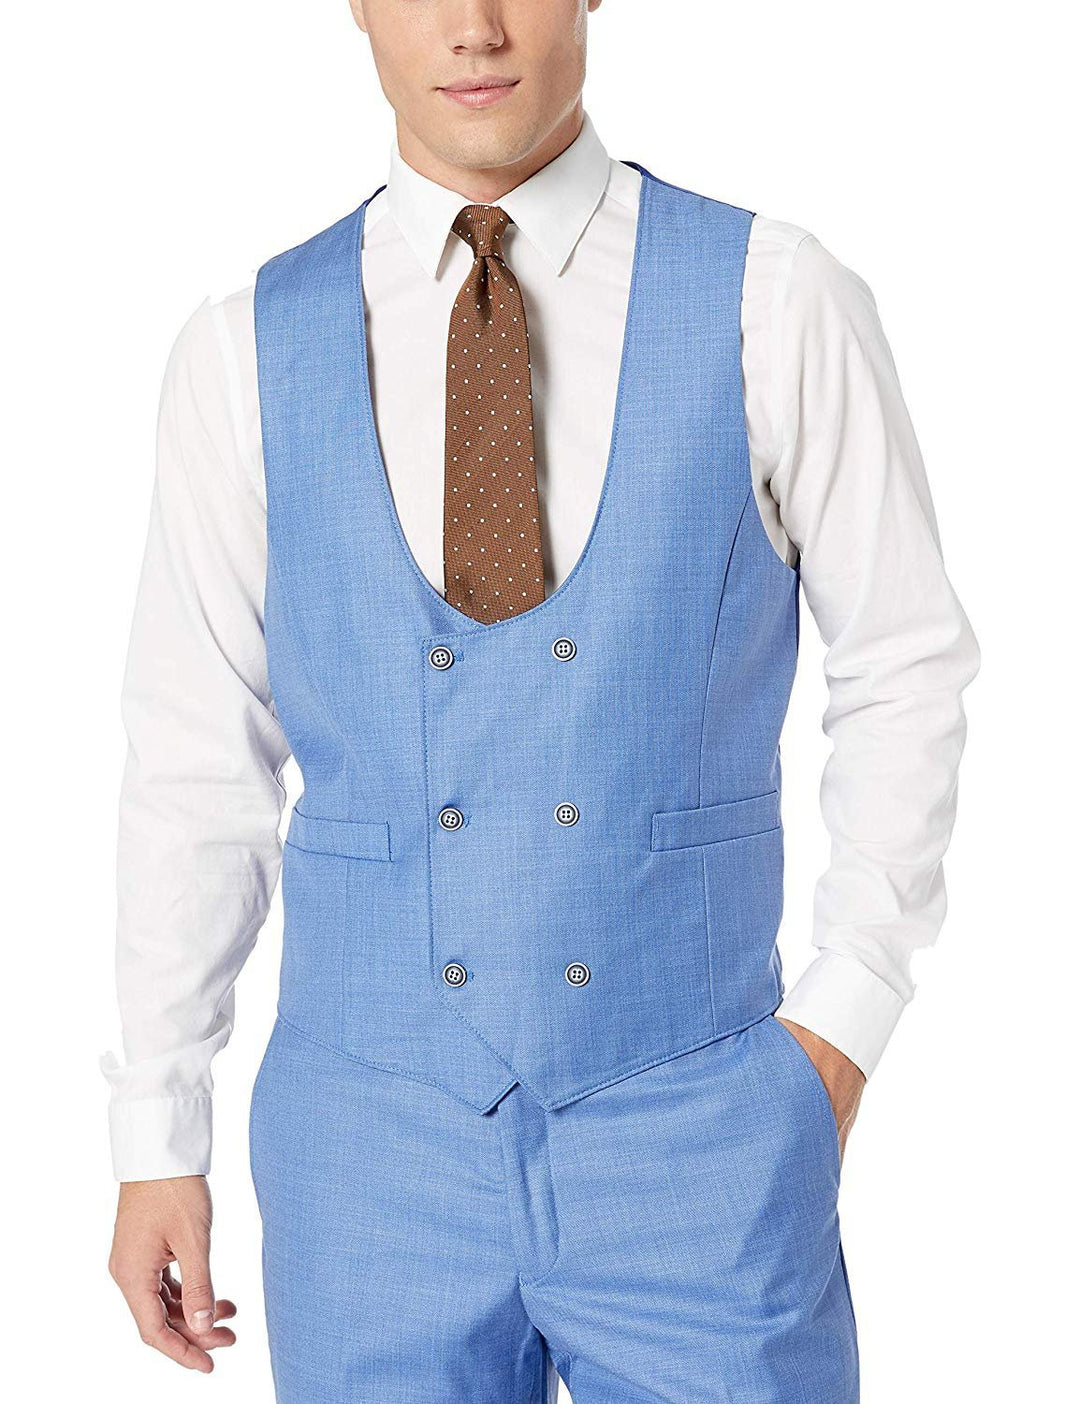 Adam Baker Men's Modern Fit 3-Piece (Jacket, Vets, Trousers) Peak Lapel Linen Feel Suit Set - CLEARANCE - FINAL SALE